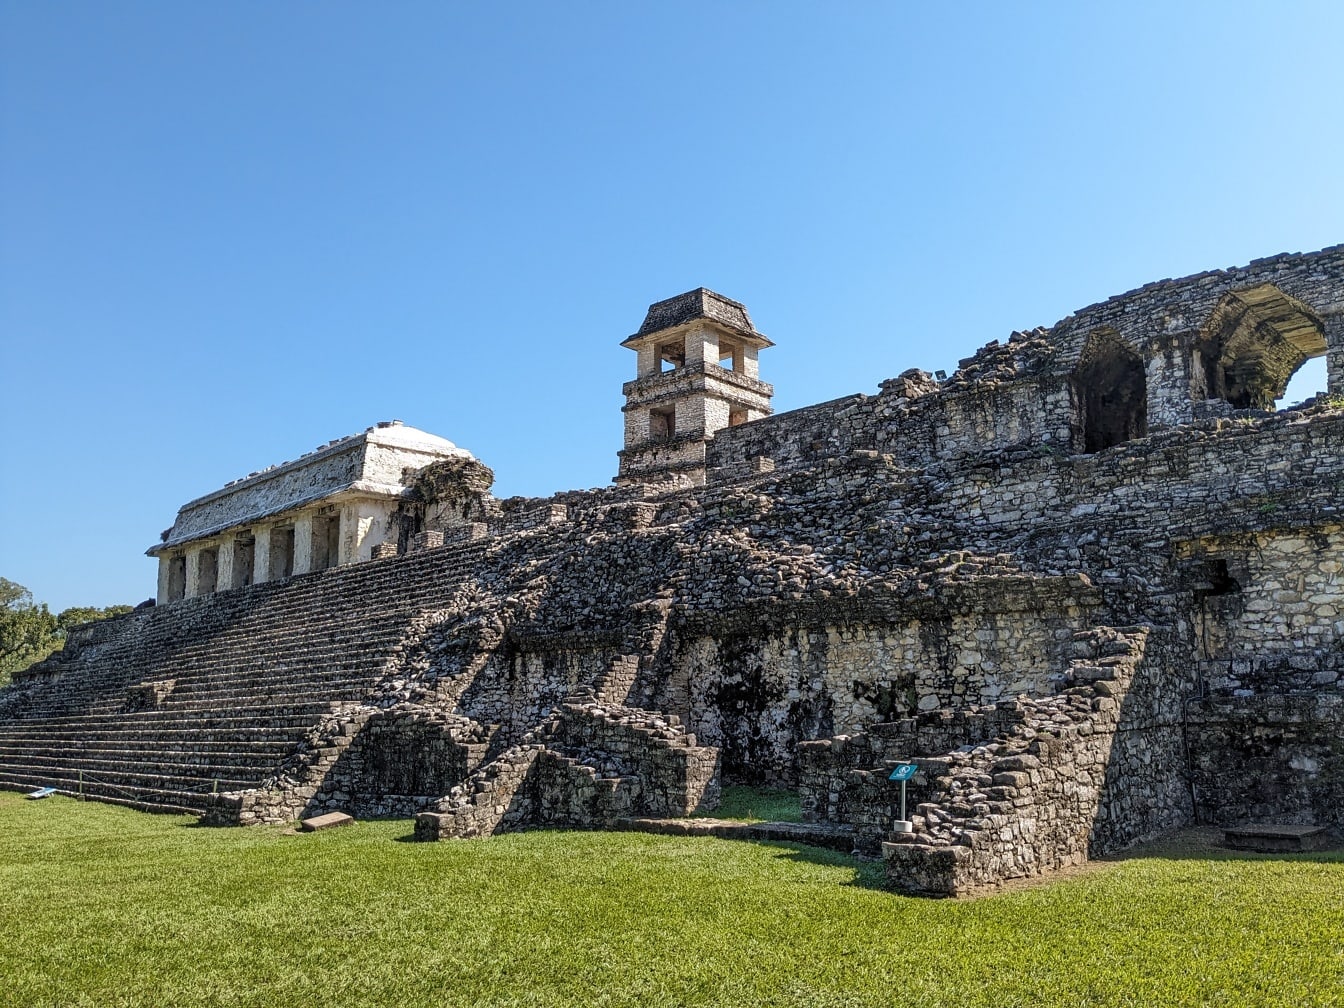 Reruntuhan batu Maya di taman nasional Palenque di Meksiko